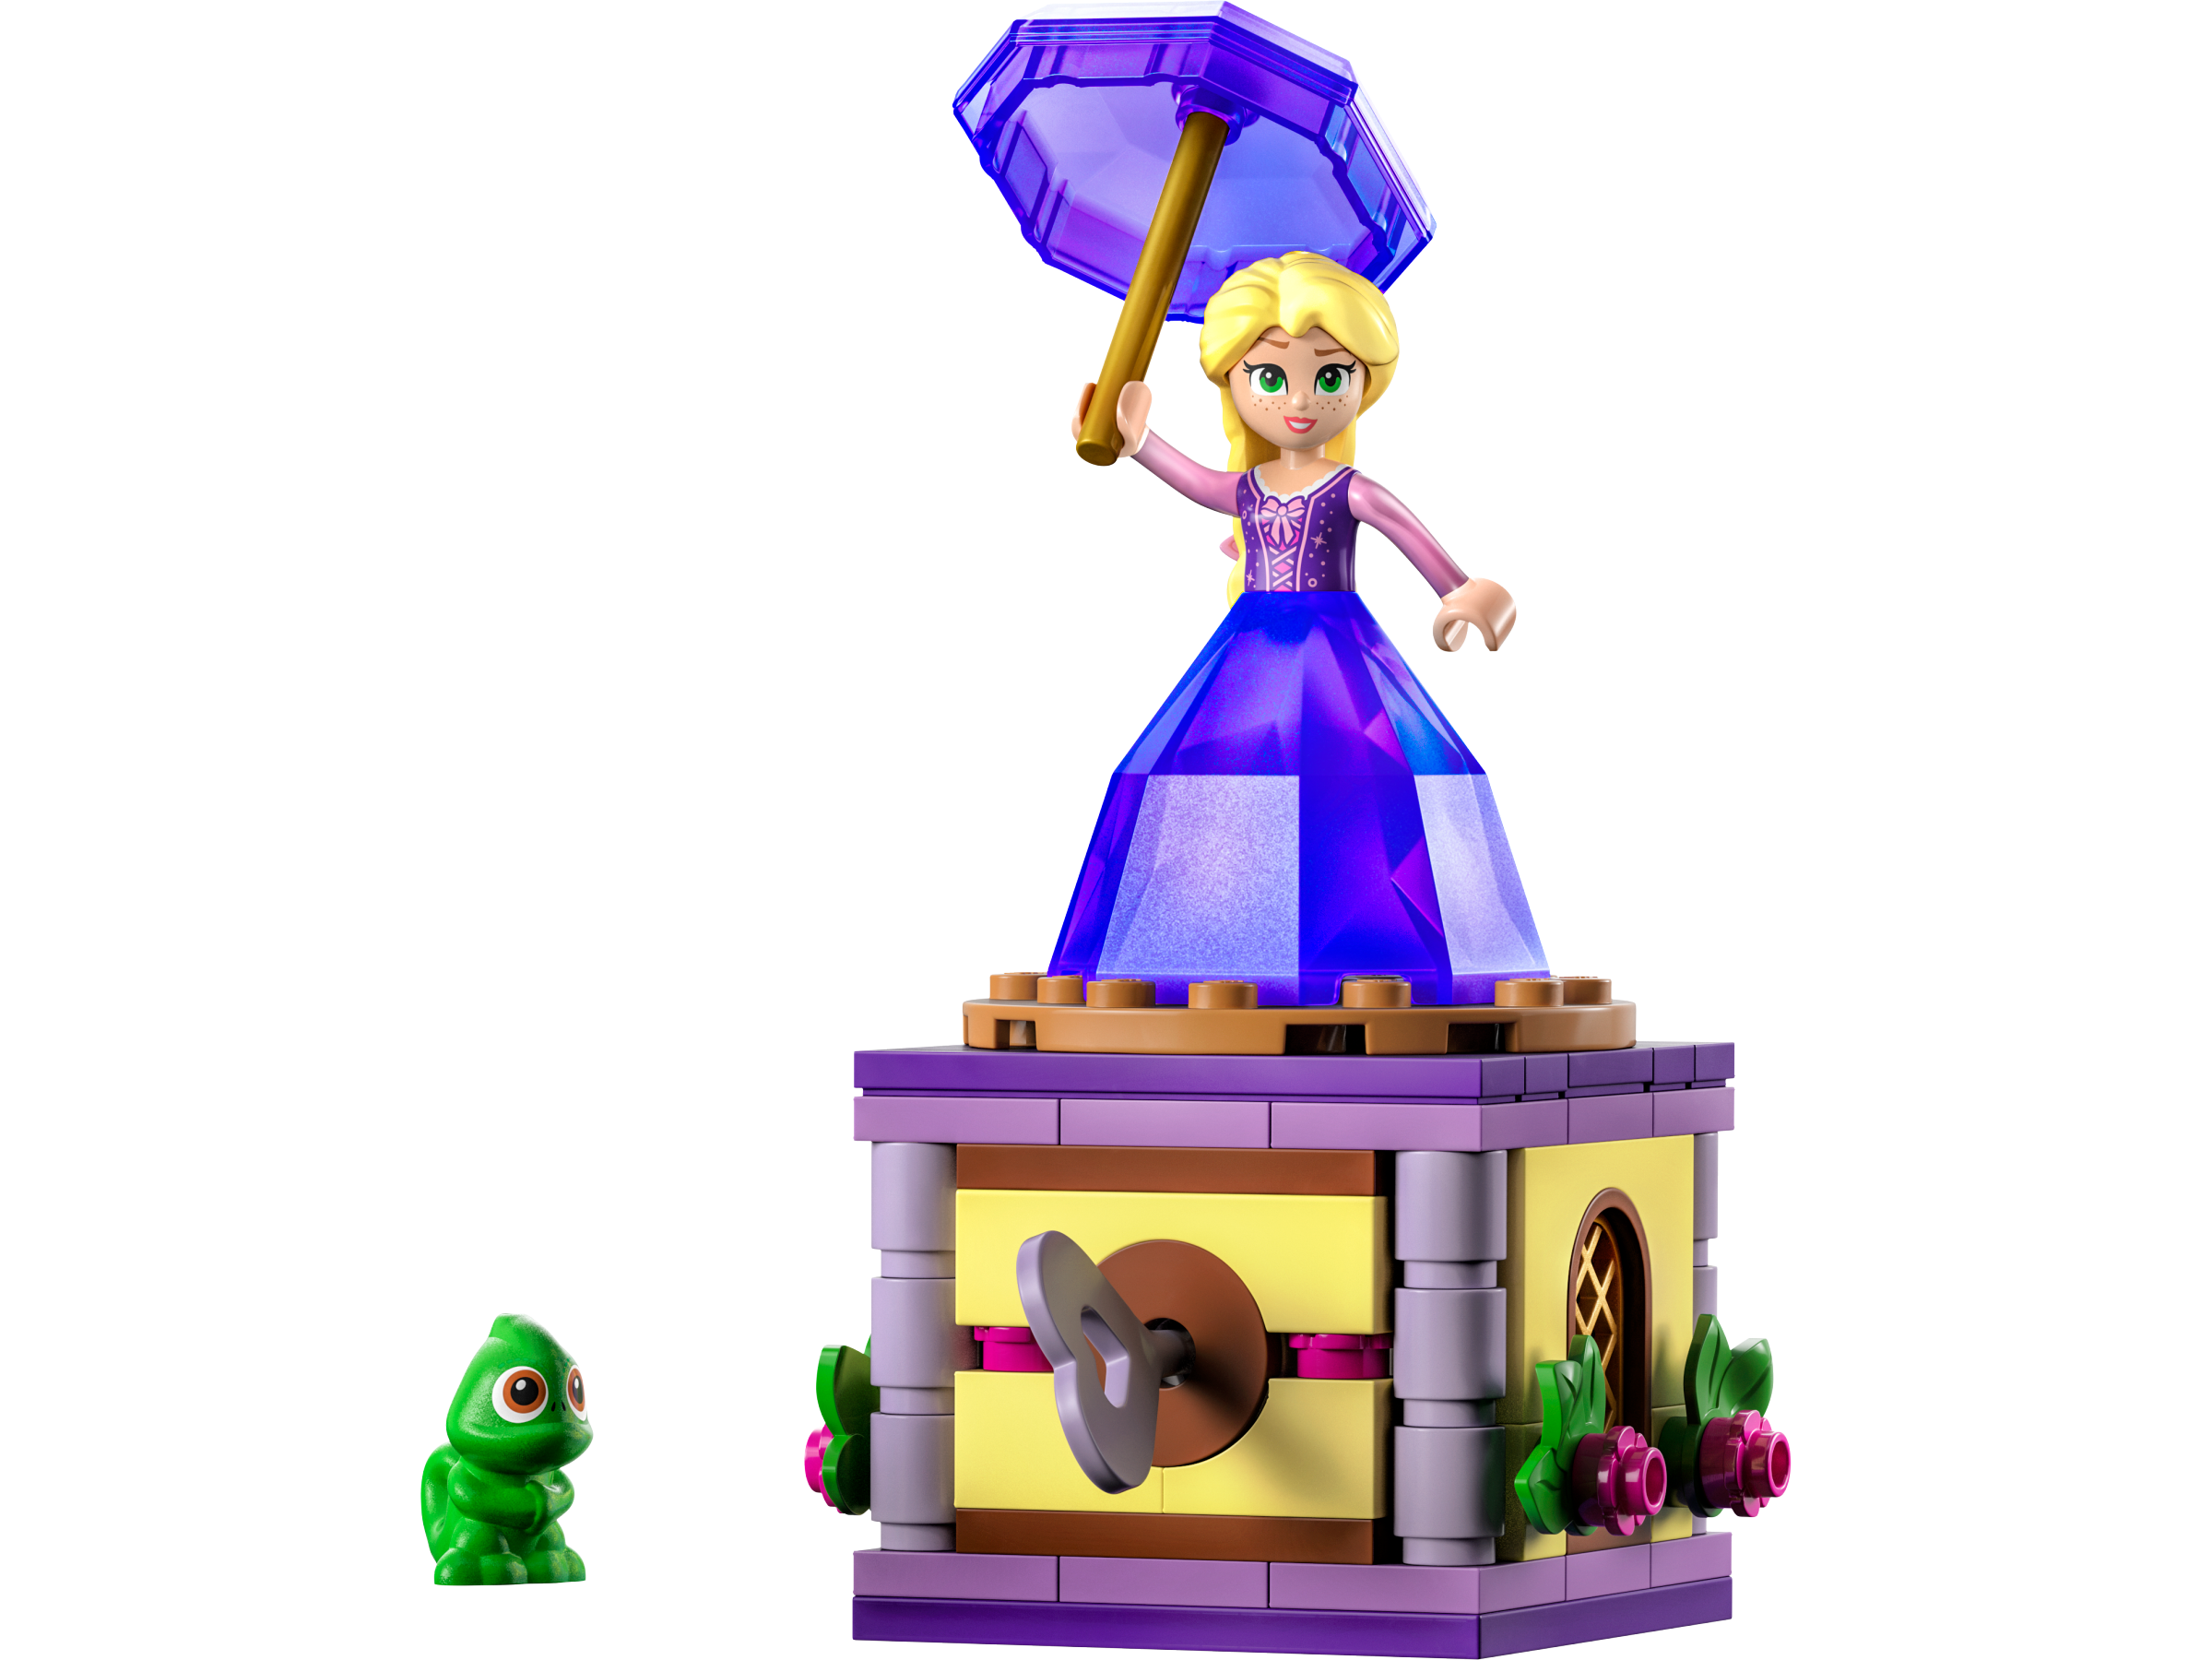 erindringsmønter dyb mel Twirling Rapunzel 43214 | Disney™ | Buy online at the Official LEGO® Shop US